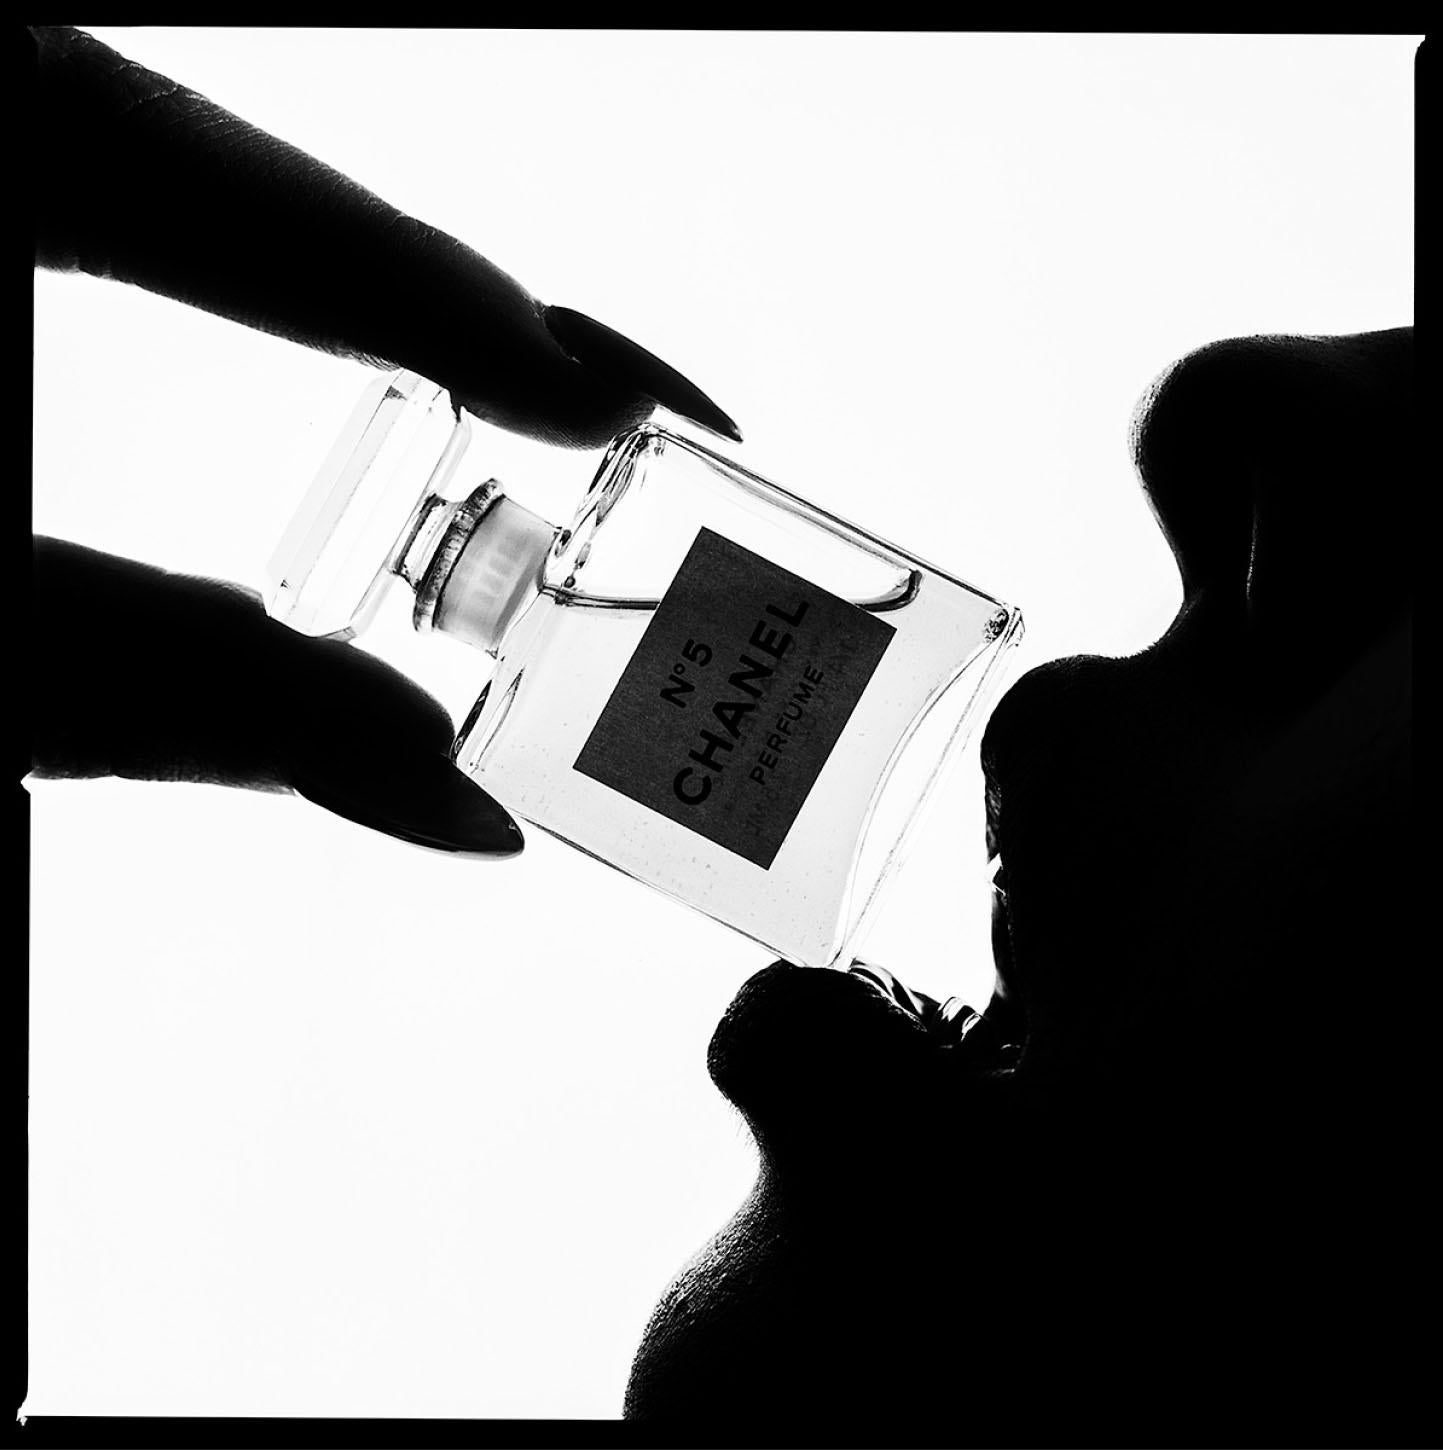 Serie: Chanel Silhouette
Chromogener Druck auf Kodak Endura Luster Papier
Alle verfügbaren Größen und Ausgaben:
18" x 18"
30" x 30"
45" x 45"
60" x 60"
70" x 70"
Ausgaben von 3 + 2 Artist Proofs

Tyler Shields ist Fotograf, Filmregisseur und Autor